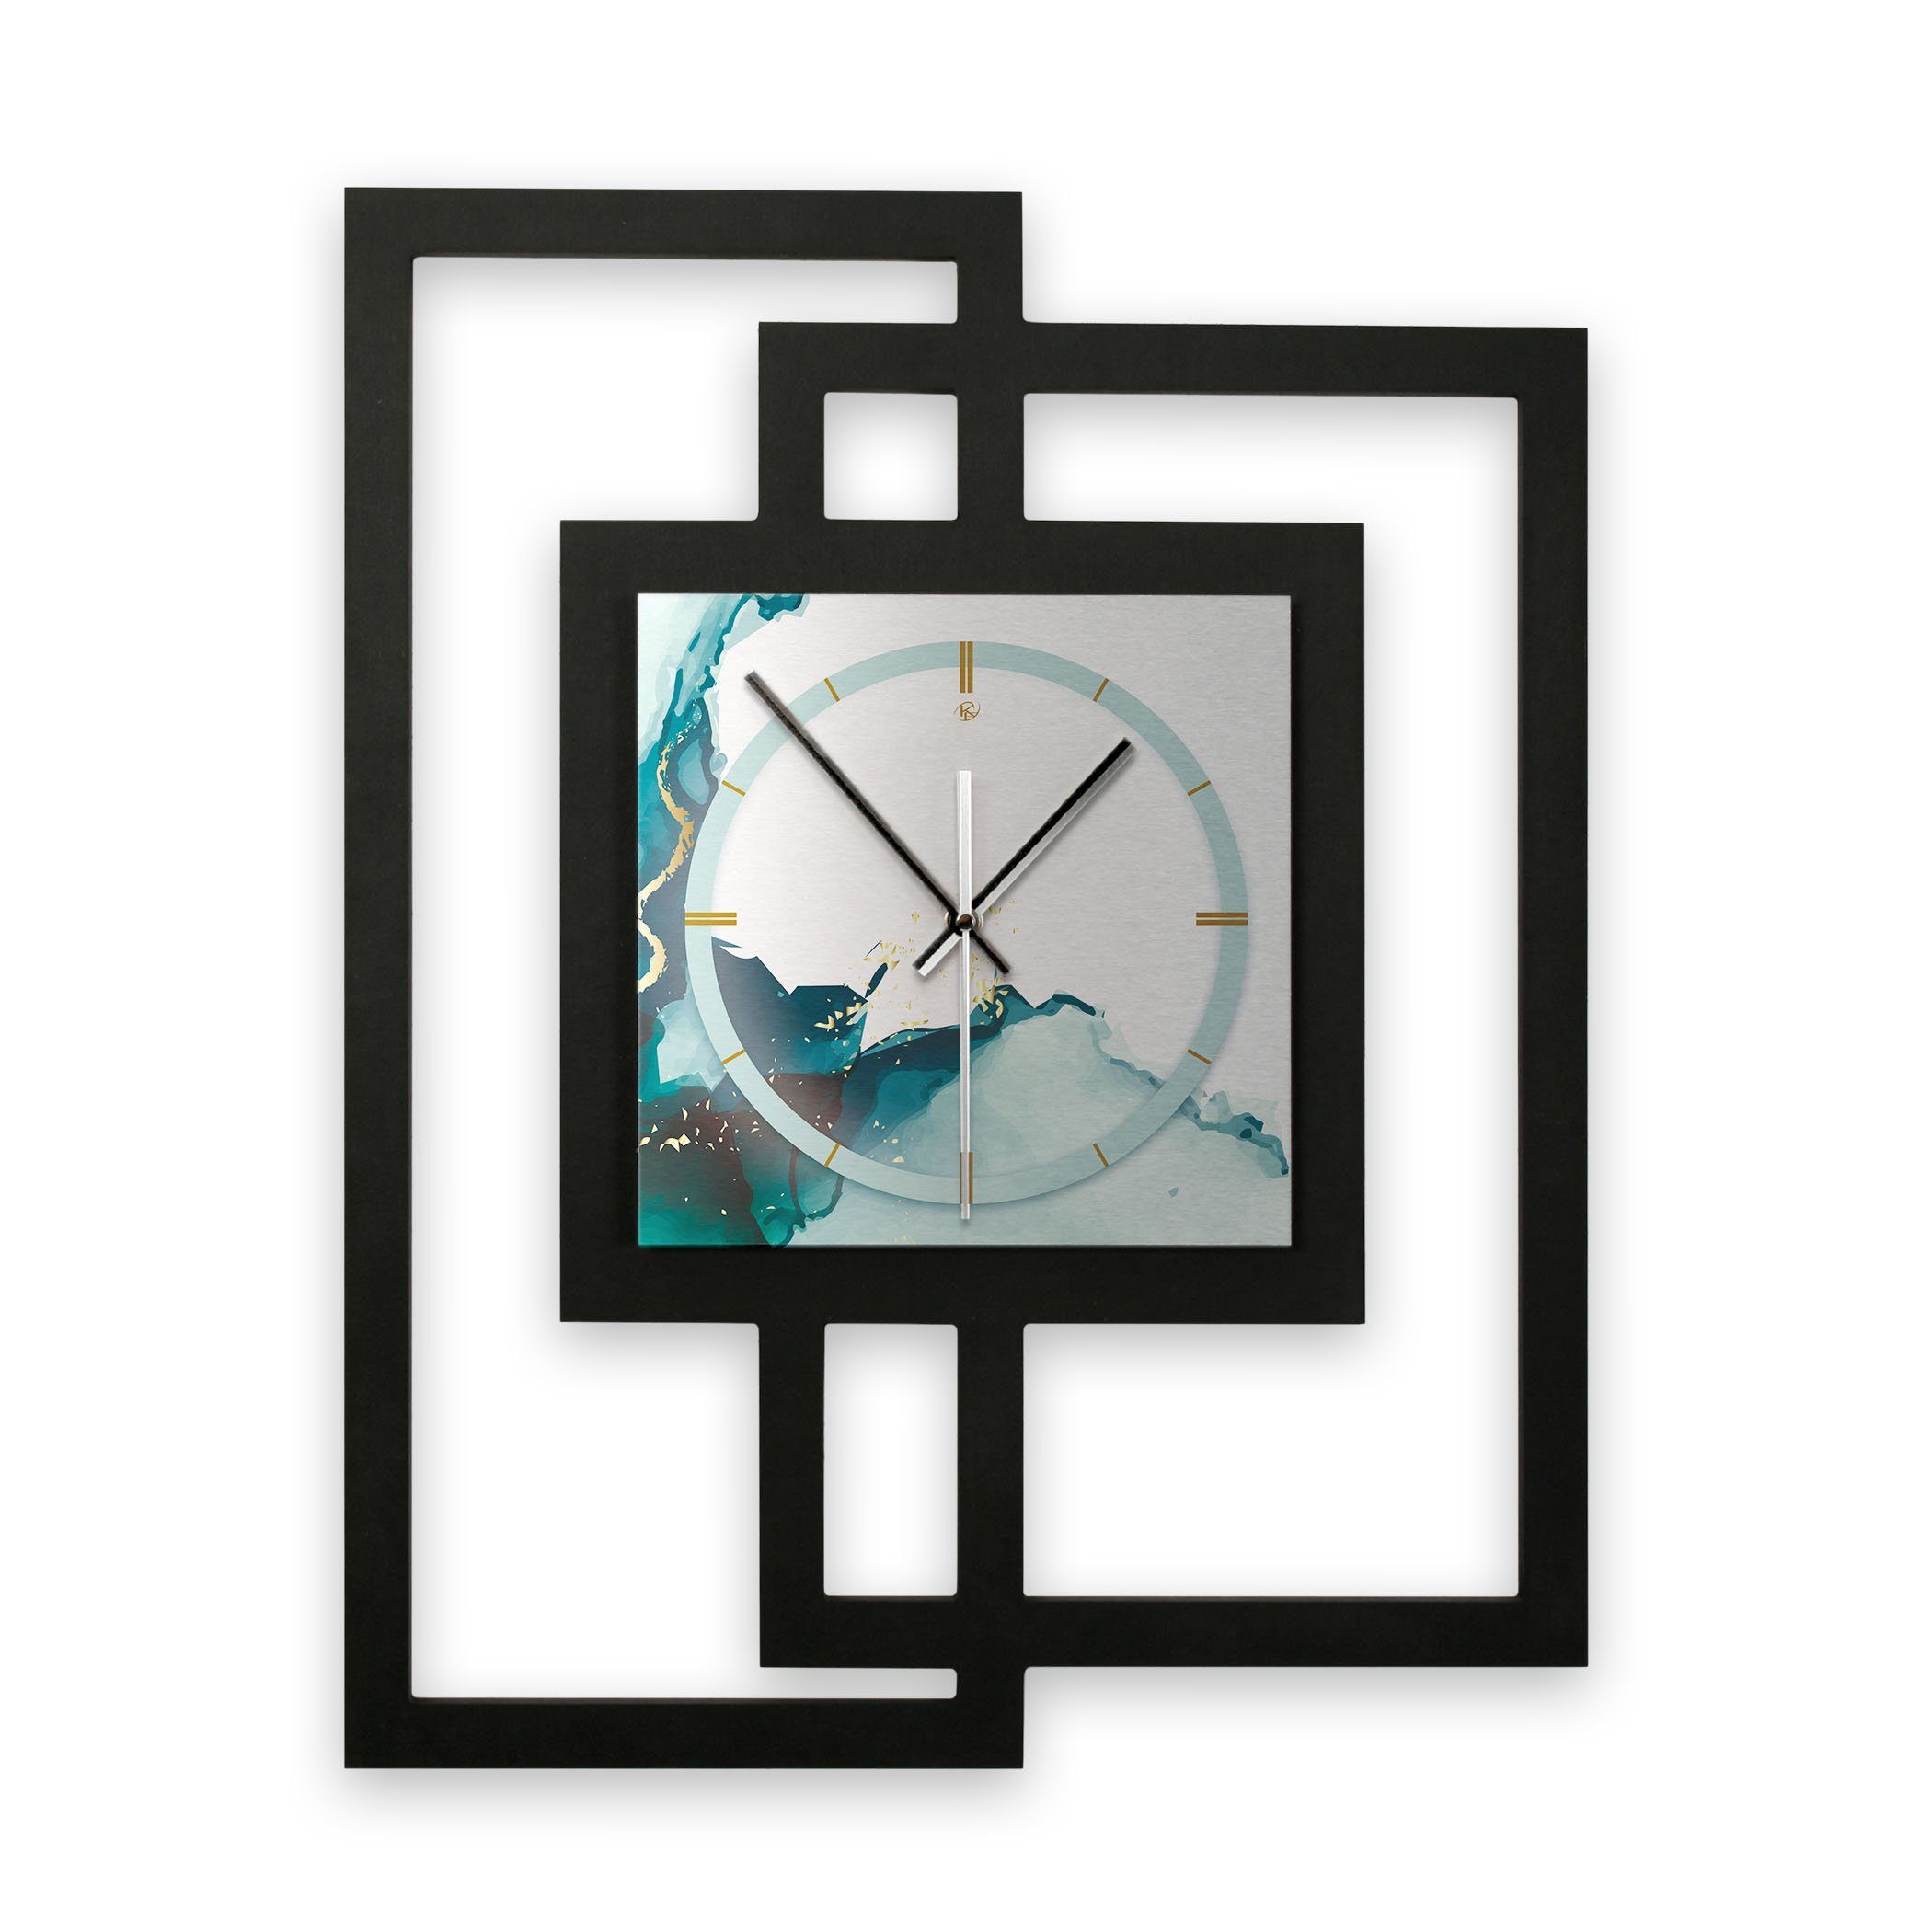 Kreative Feder Wanduhr Design-Wanduhr „Turquoise“ in modernem Metallic-Look (ohne Ticken; Funk- oder Quarzuhrwerk; elegant, außergewöhnlich, modern)